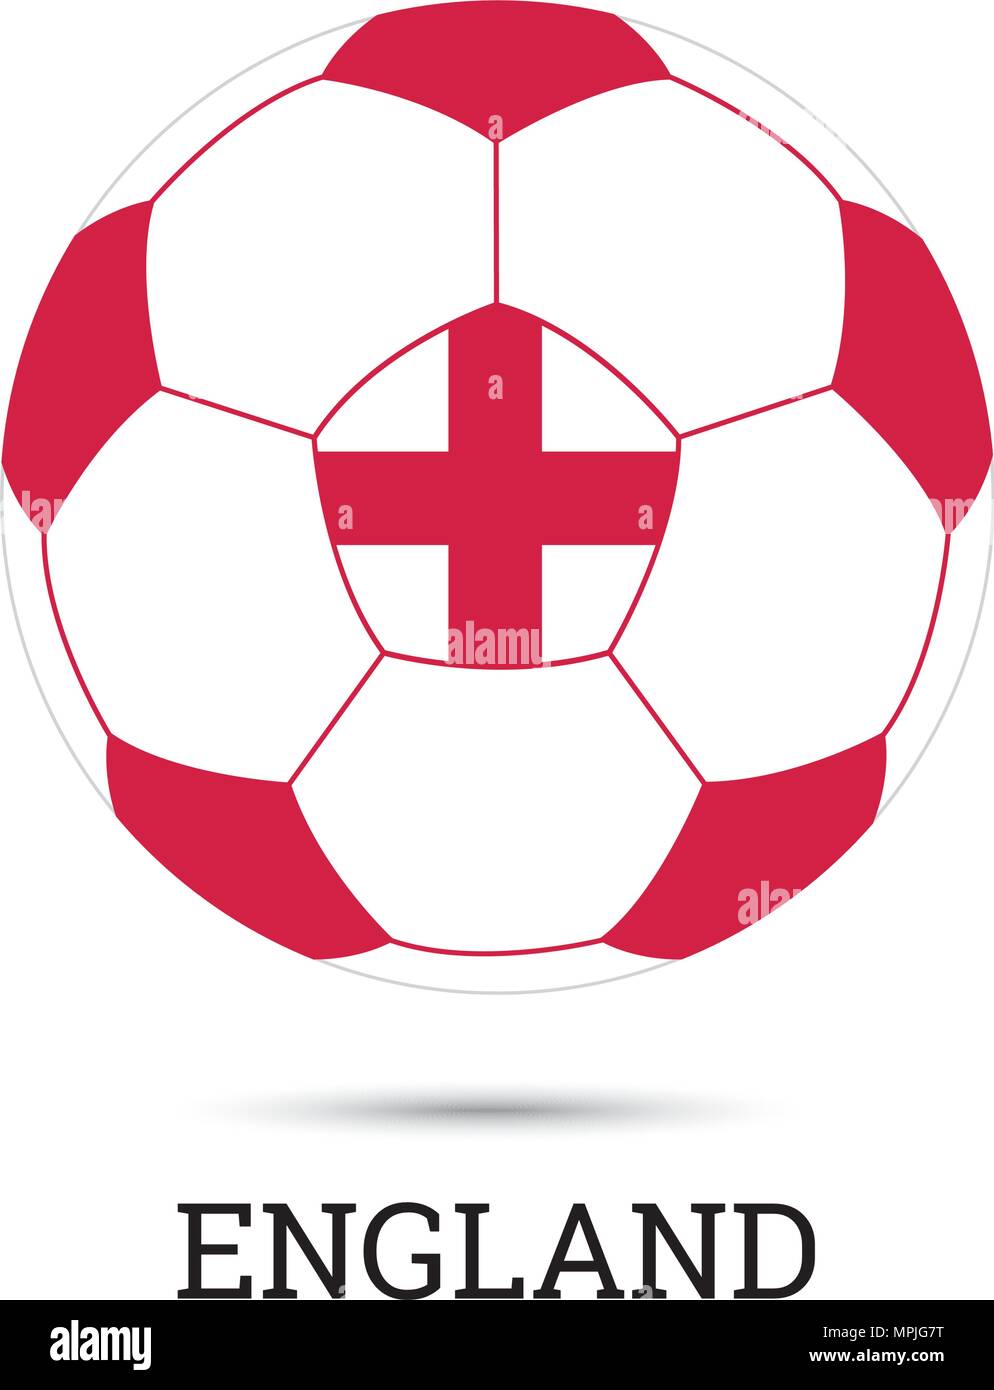 Fußball mit Englischen nationalen Farben und Wappen Vector Illustration  Stock-Vektorgrafik - Alamy